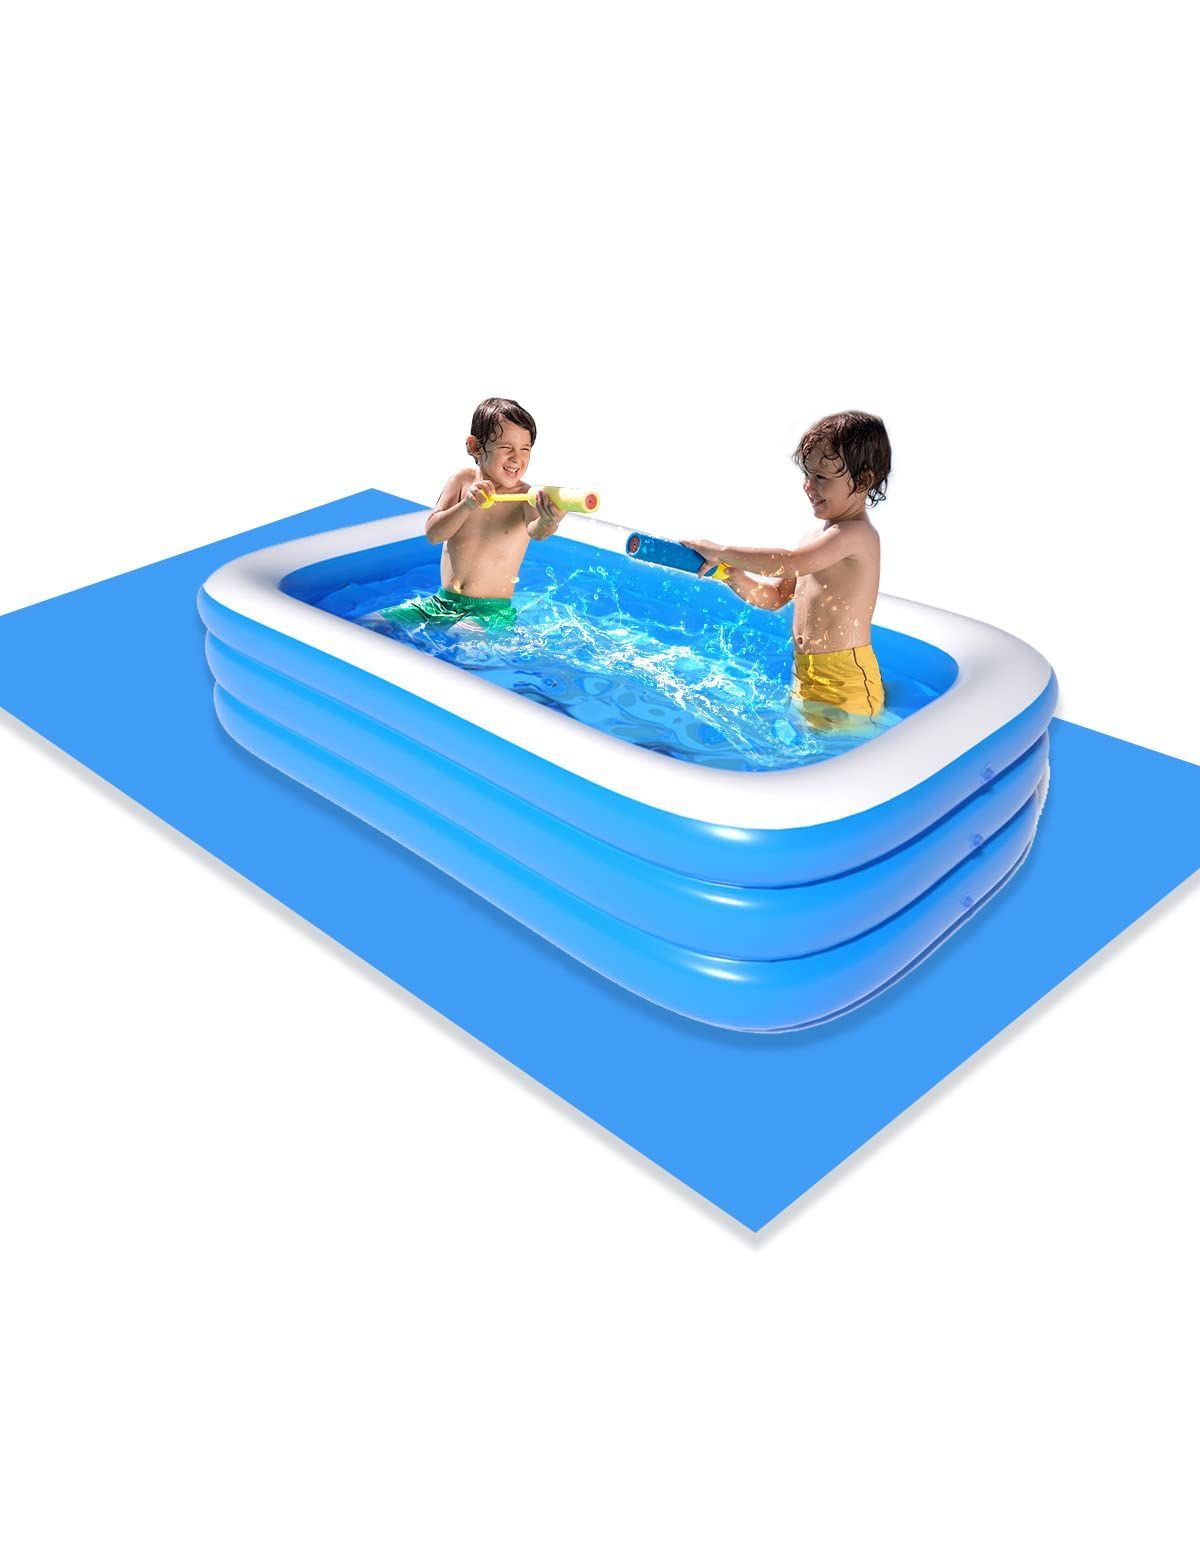 新着商品暑さ対策 屋外用 夏の日 自宅 プール下シート付き 耐高温 耐